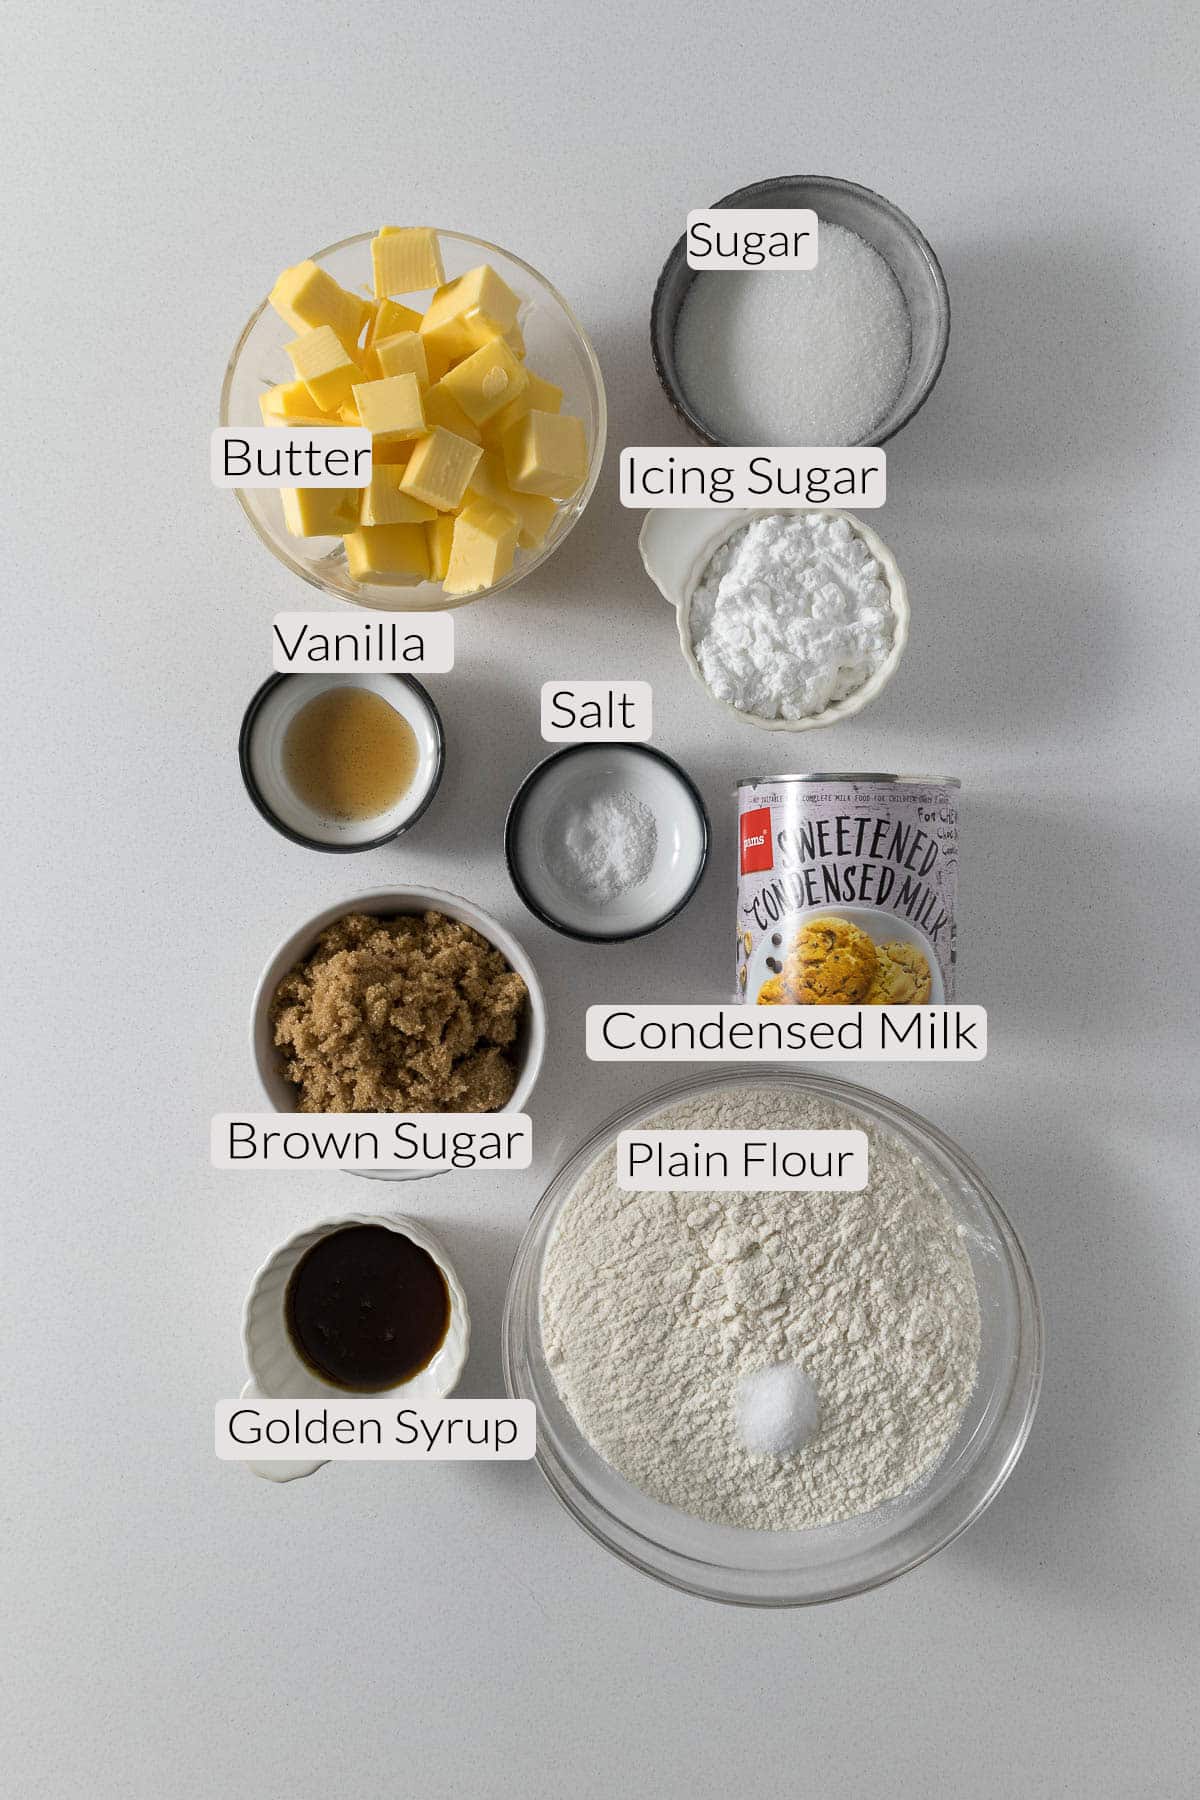 Tan slice ingredients - flour, salt, butter, sugar, vanilla, icing sugar, golden syrup, condensed milk.